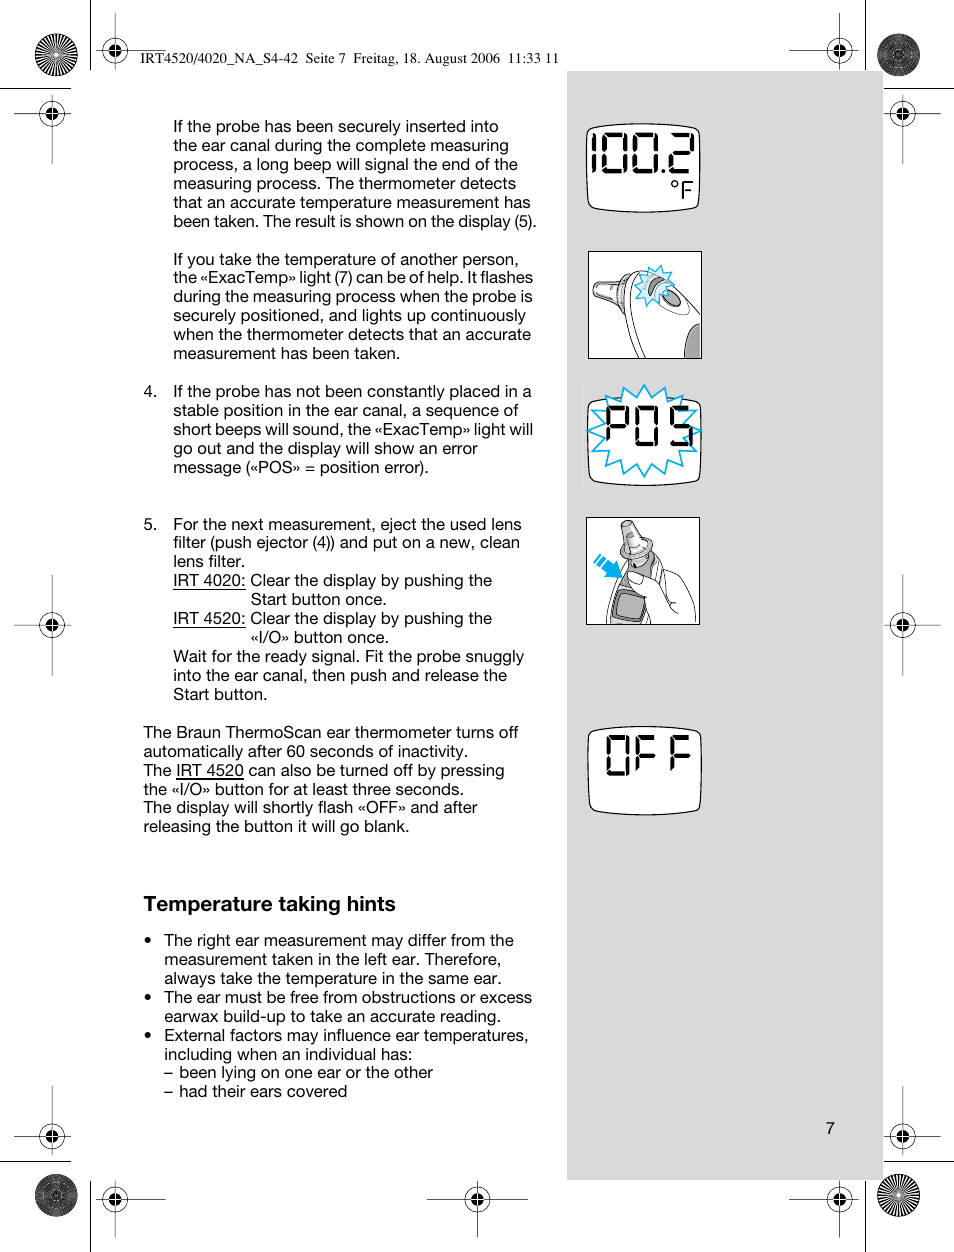 Braun Thermoscan Lf 20 User Manual | Peatix